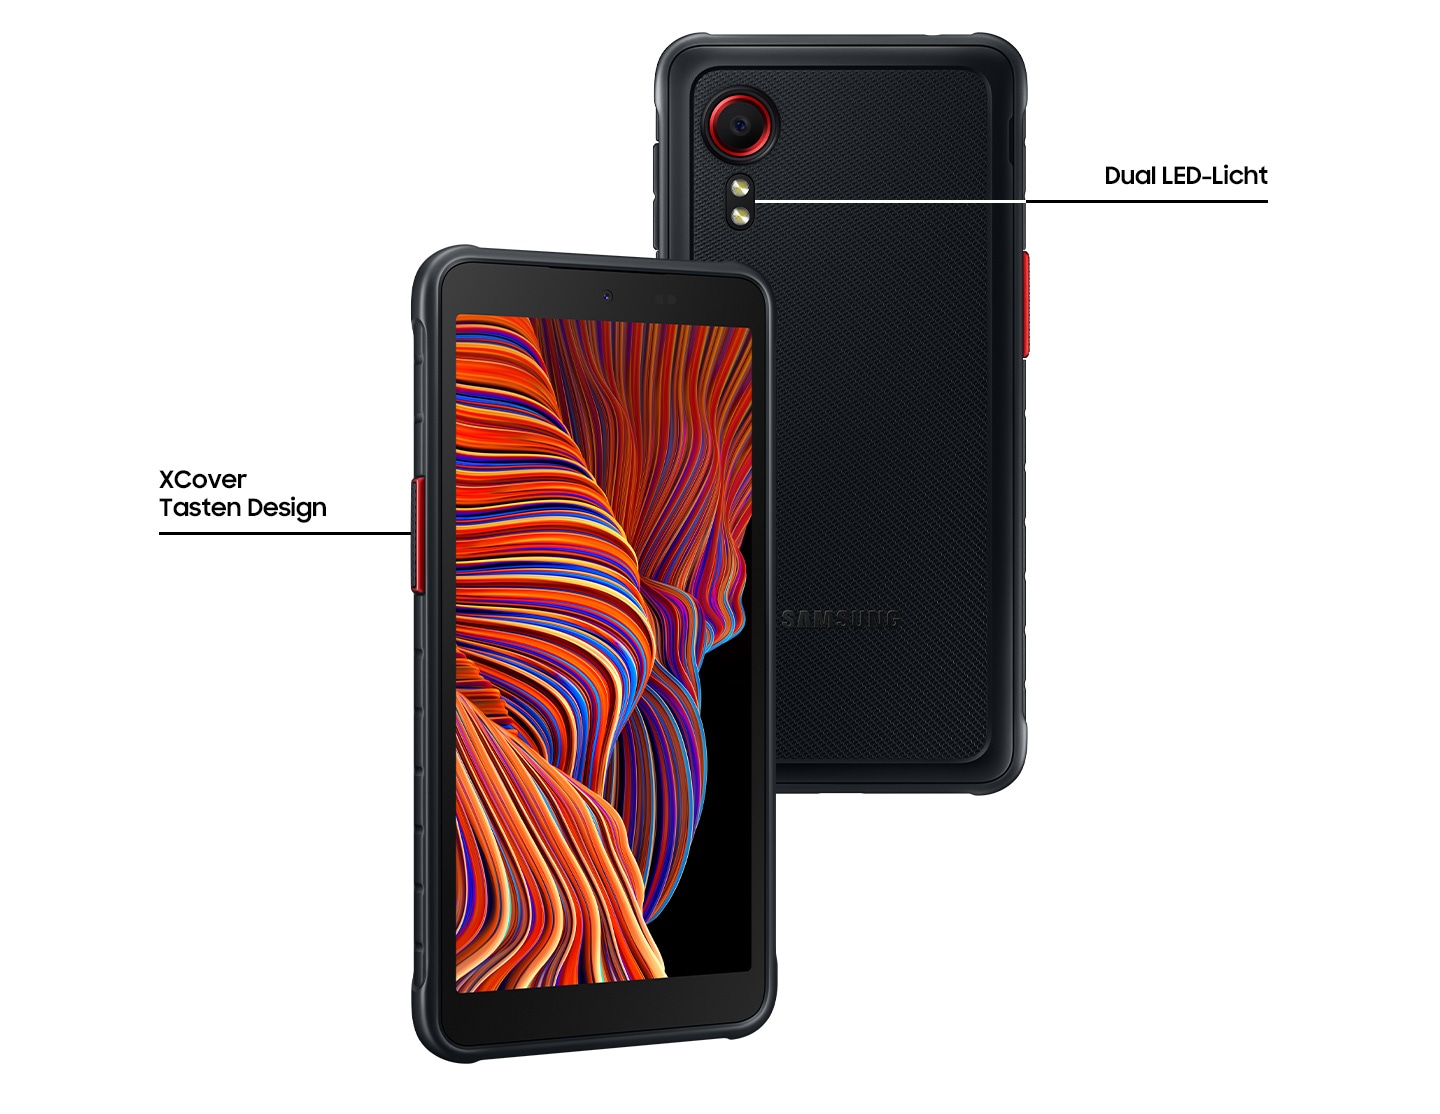 Zwei Galaxy XCover 5 in Schwarz stehen leicht überlappend nebeneinander. Das gekippte Smartphone mit der orangefarbenen Liniengrafik auf dem Display ist auf der linken Seite und zeigt das XCover Key Design. Die andere Rückansicht des Galaxy XCover 5 zeigt Dual LED Blitz.